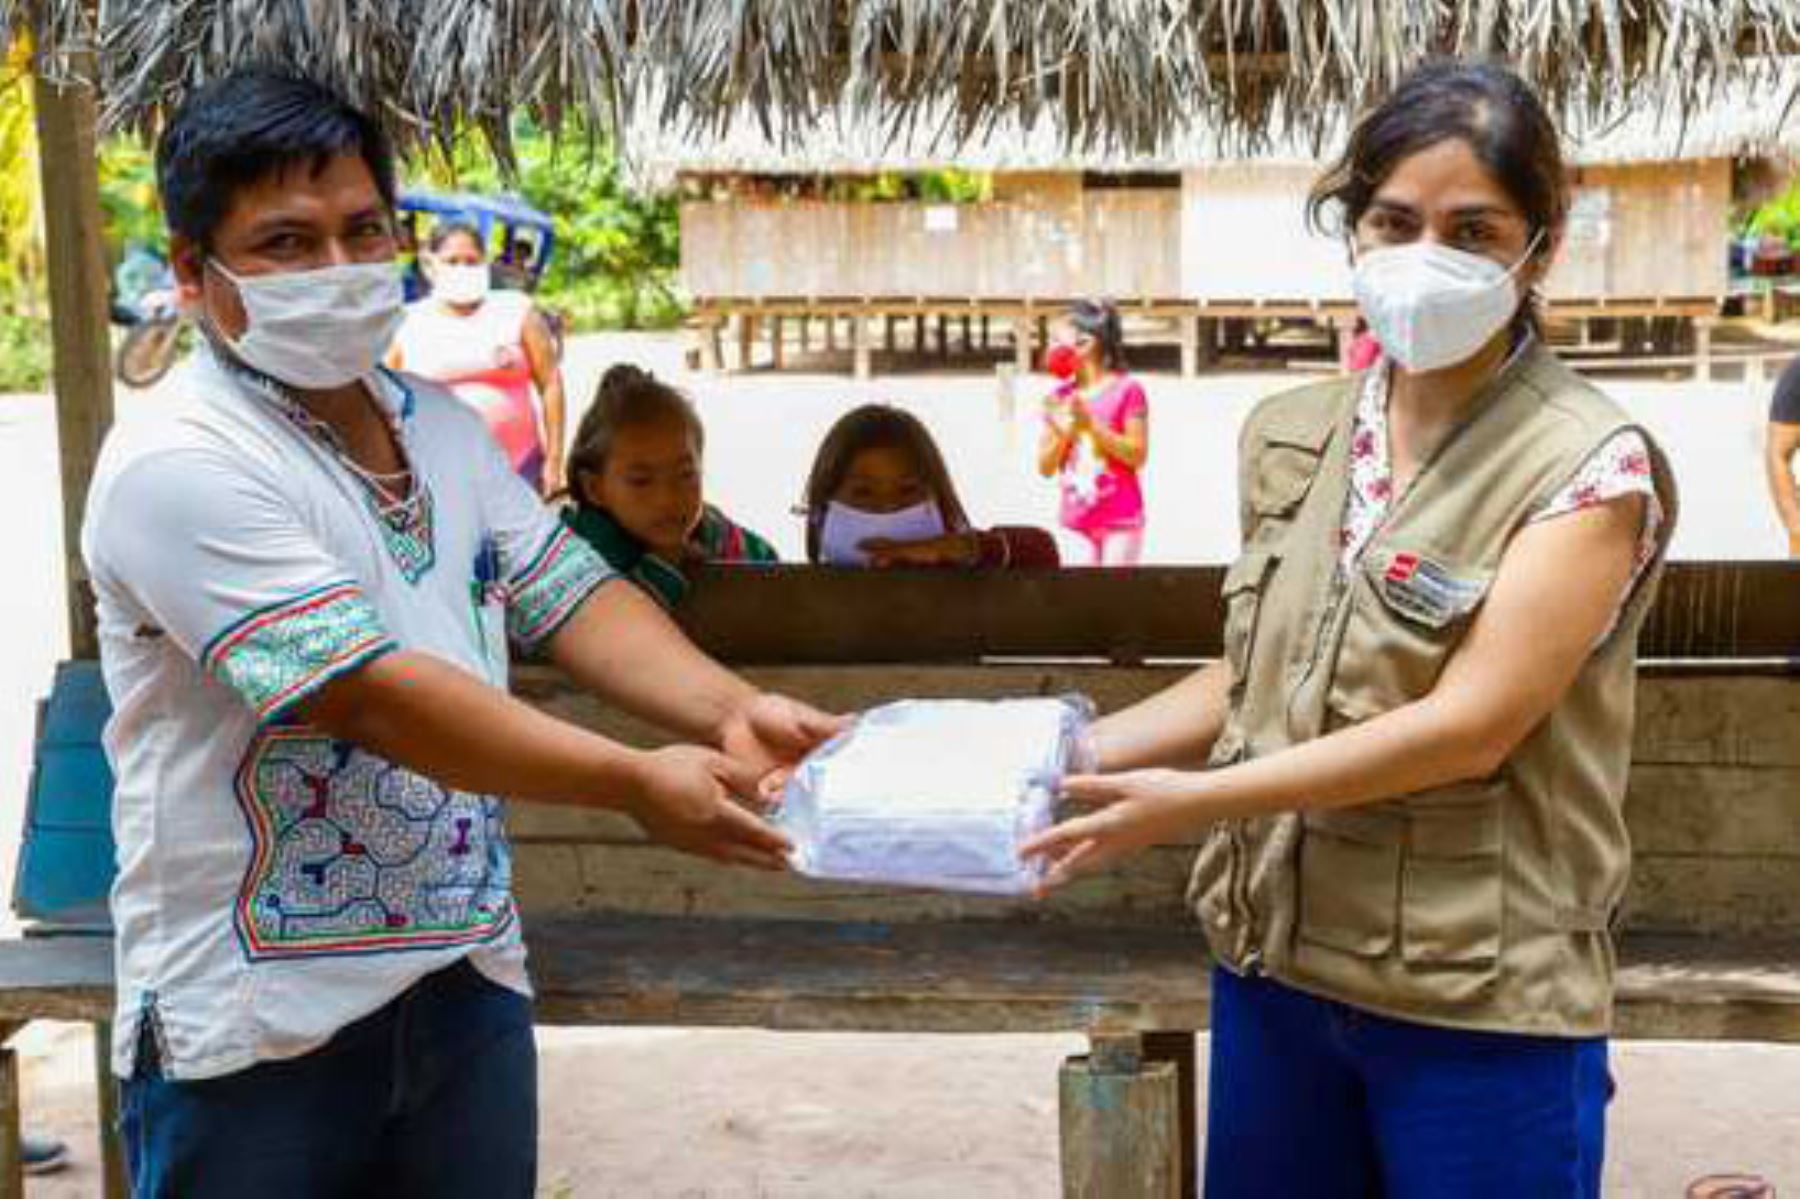 La viceministra de Interculturalidad, Angela Acevedo, informó que junto al Minsa y la Diresa Ucayali organizaron una campaña de salud integral para las familias de la comunidad Shambo Porvenir, región Ucayali. Foto: ANDINA/Cultura